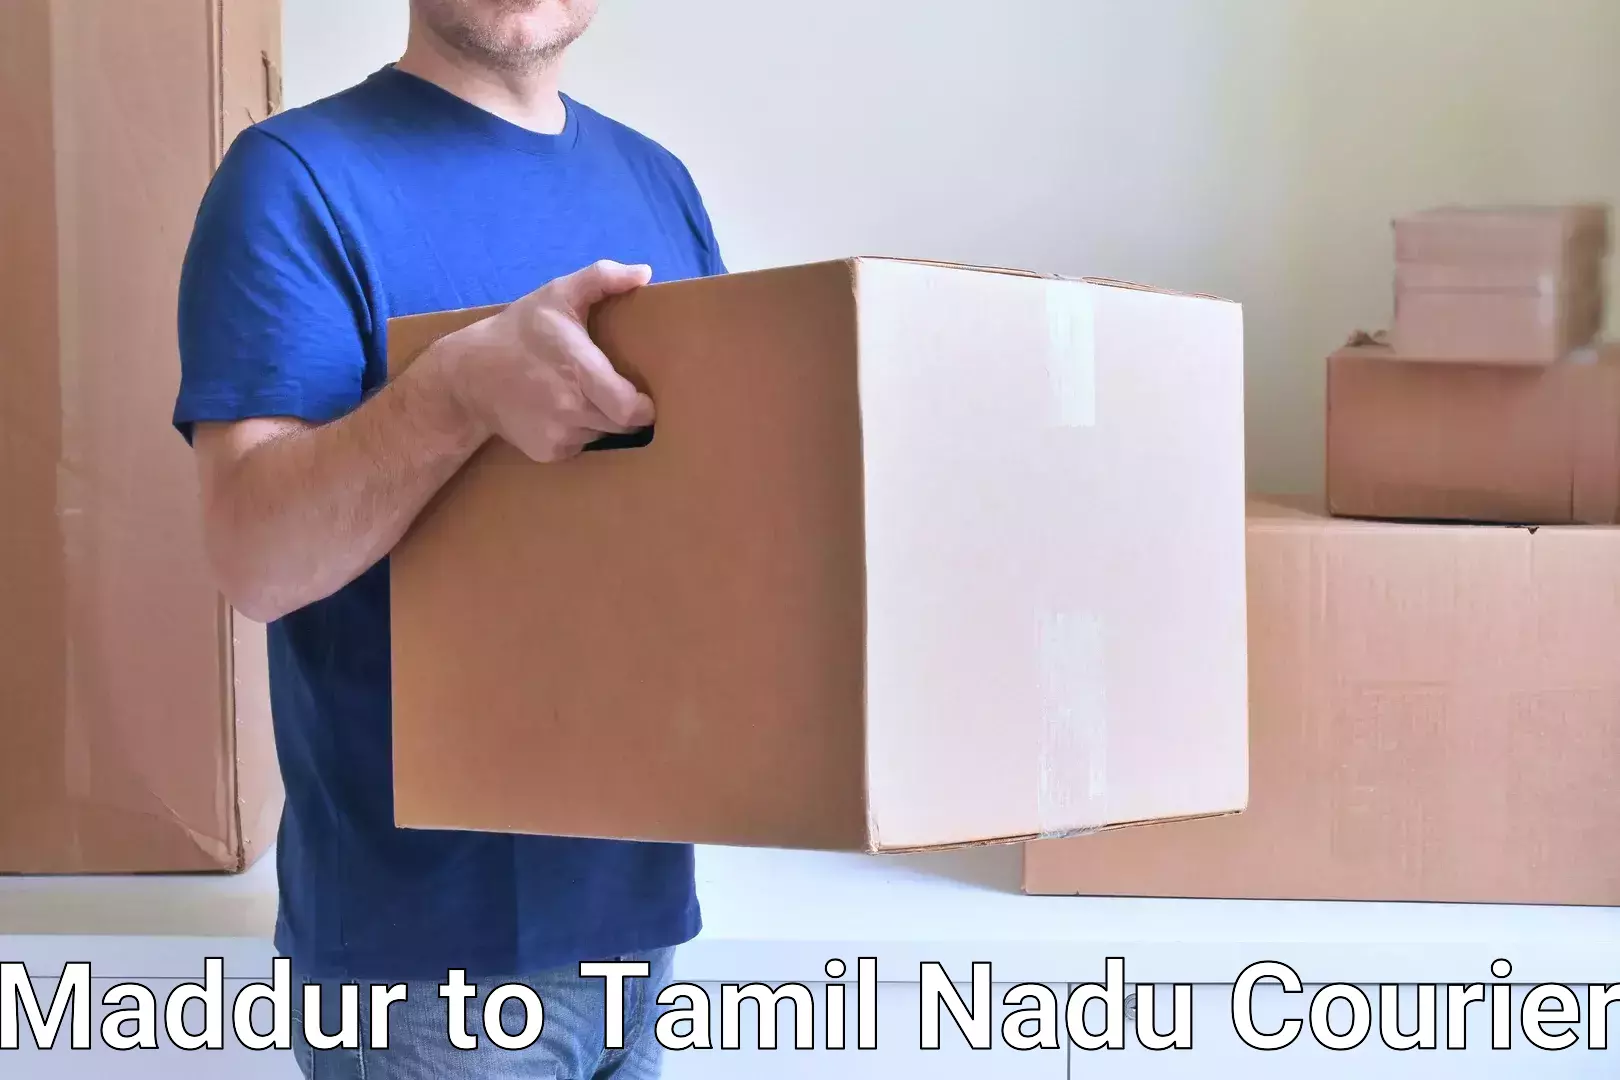 Professional courier handling Maddur to Devakottai